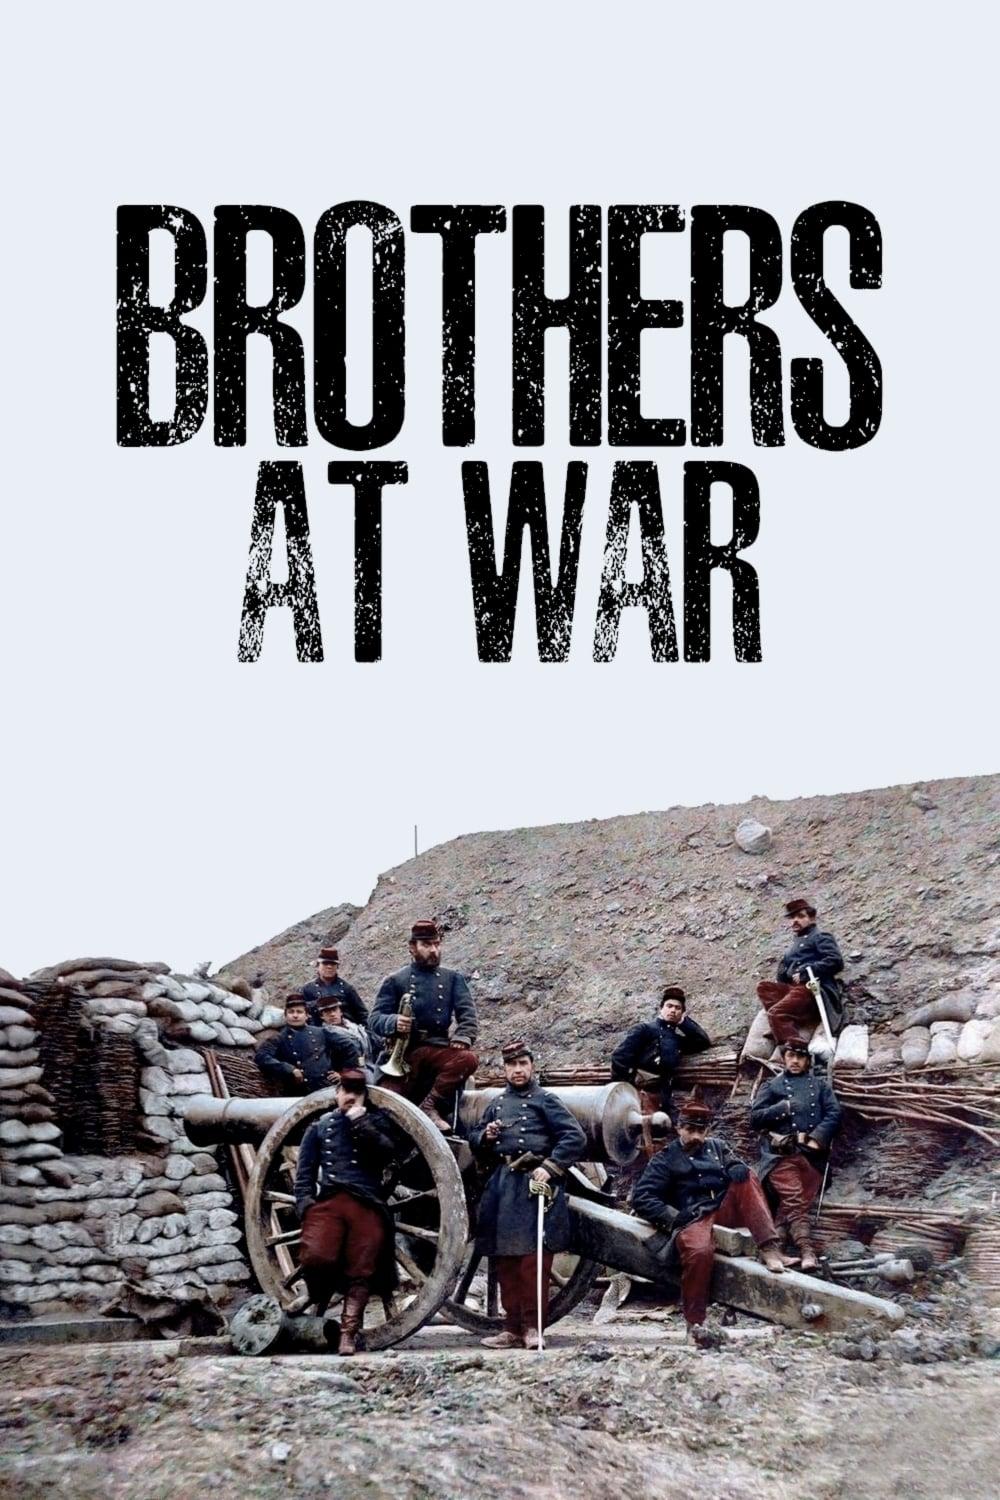 Brothers at War poster